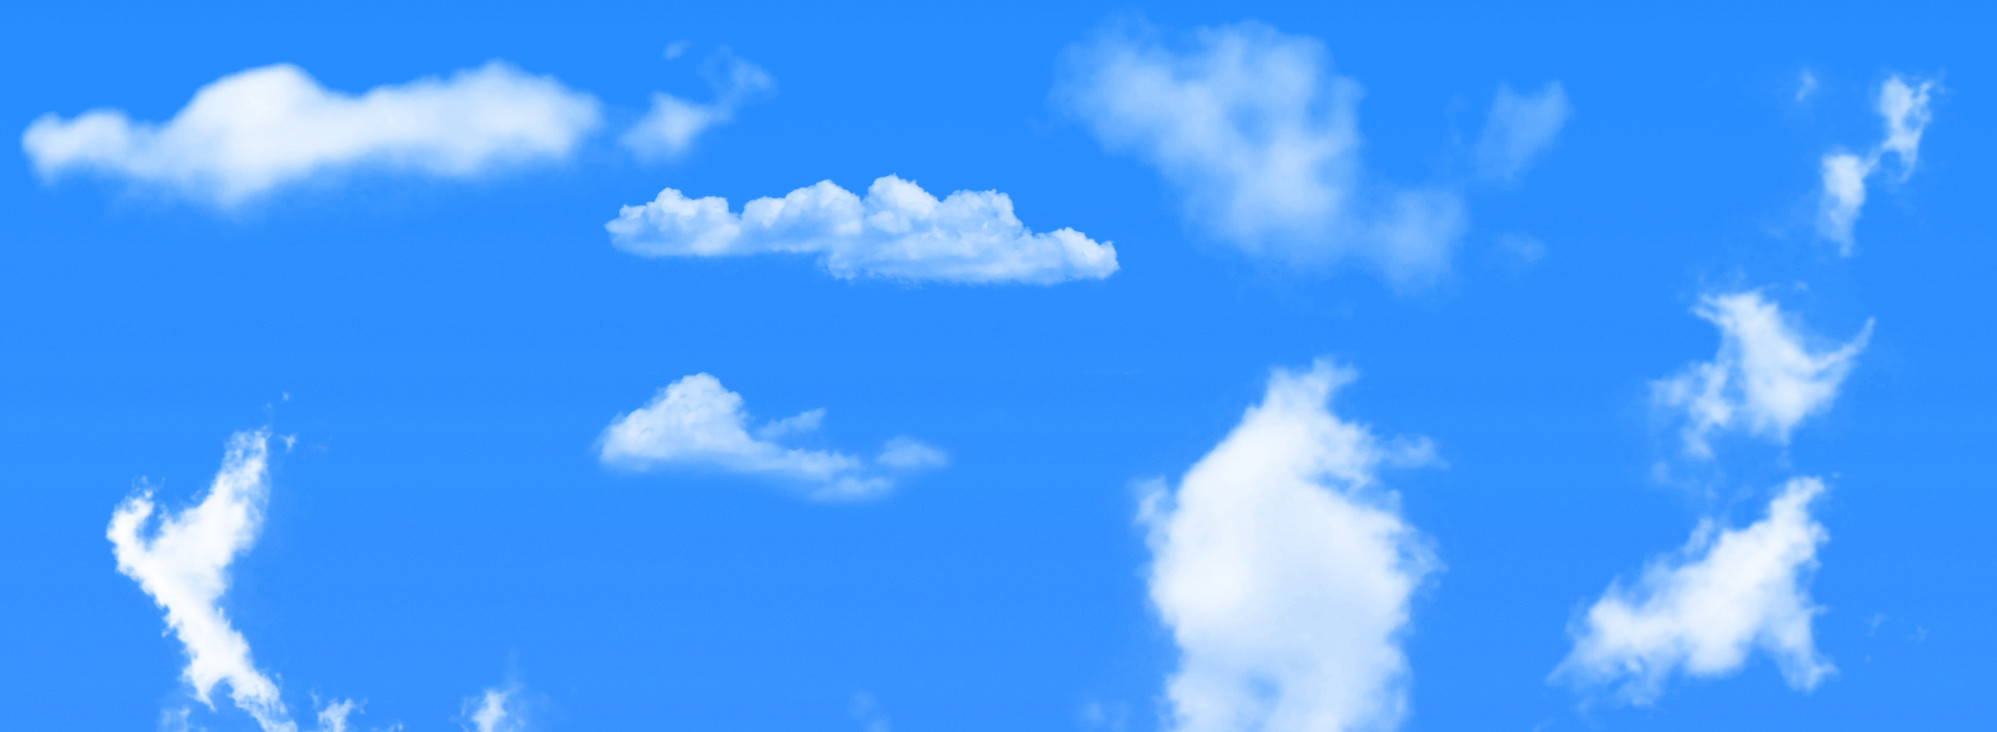 4 Clouds Compared